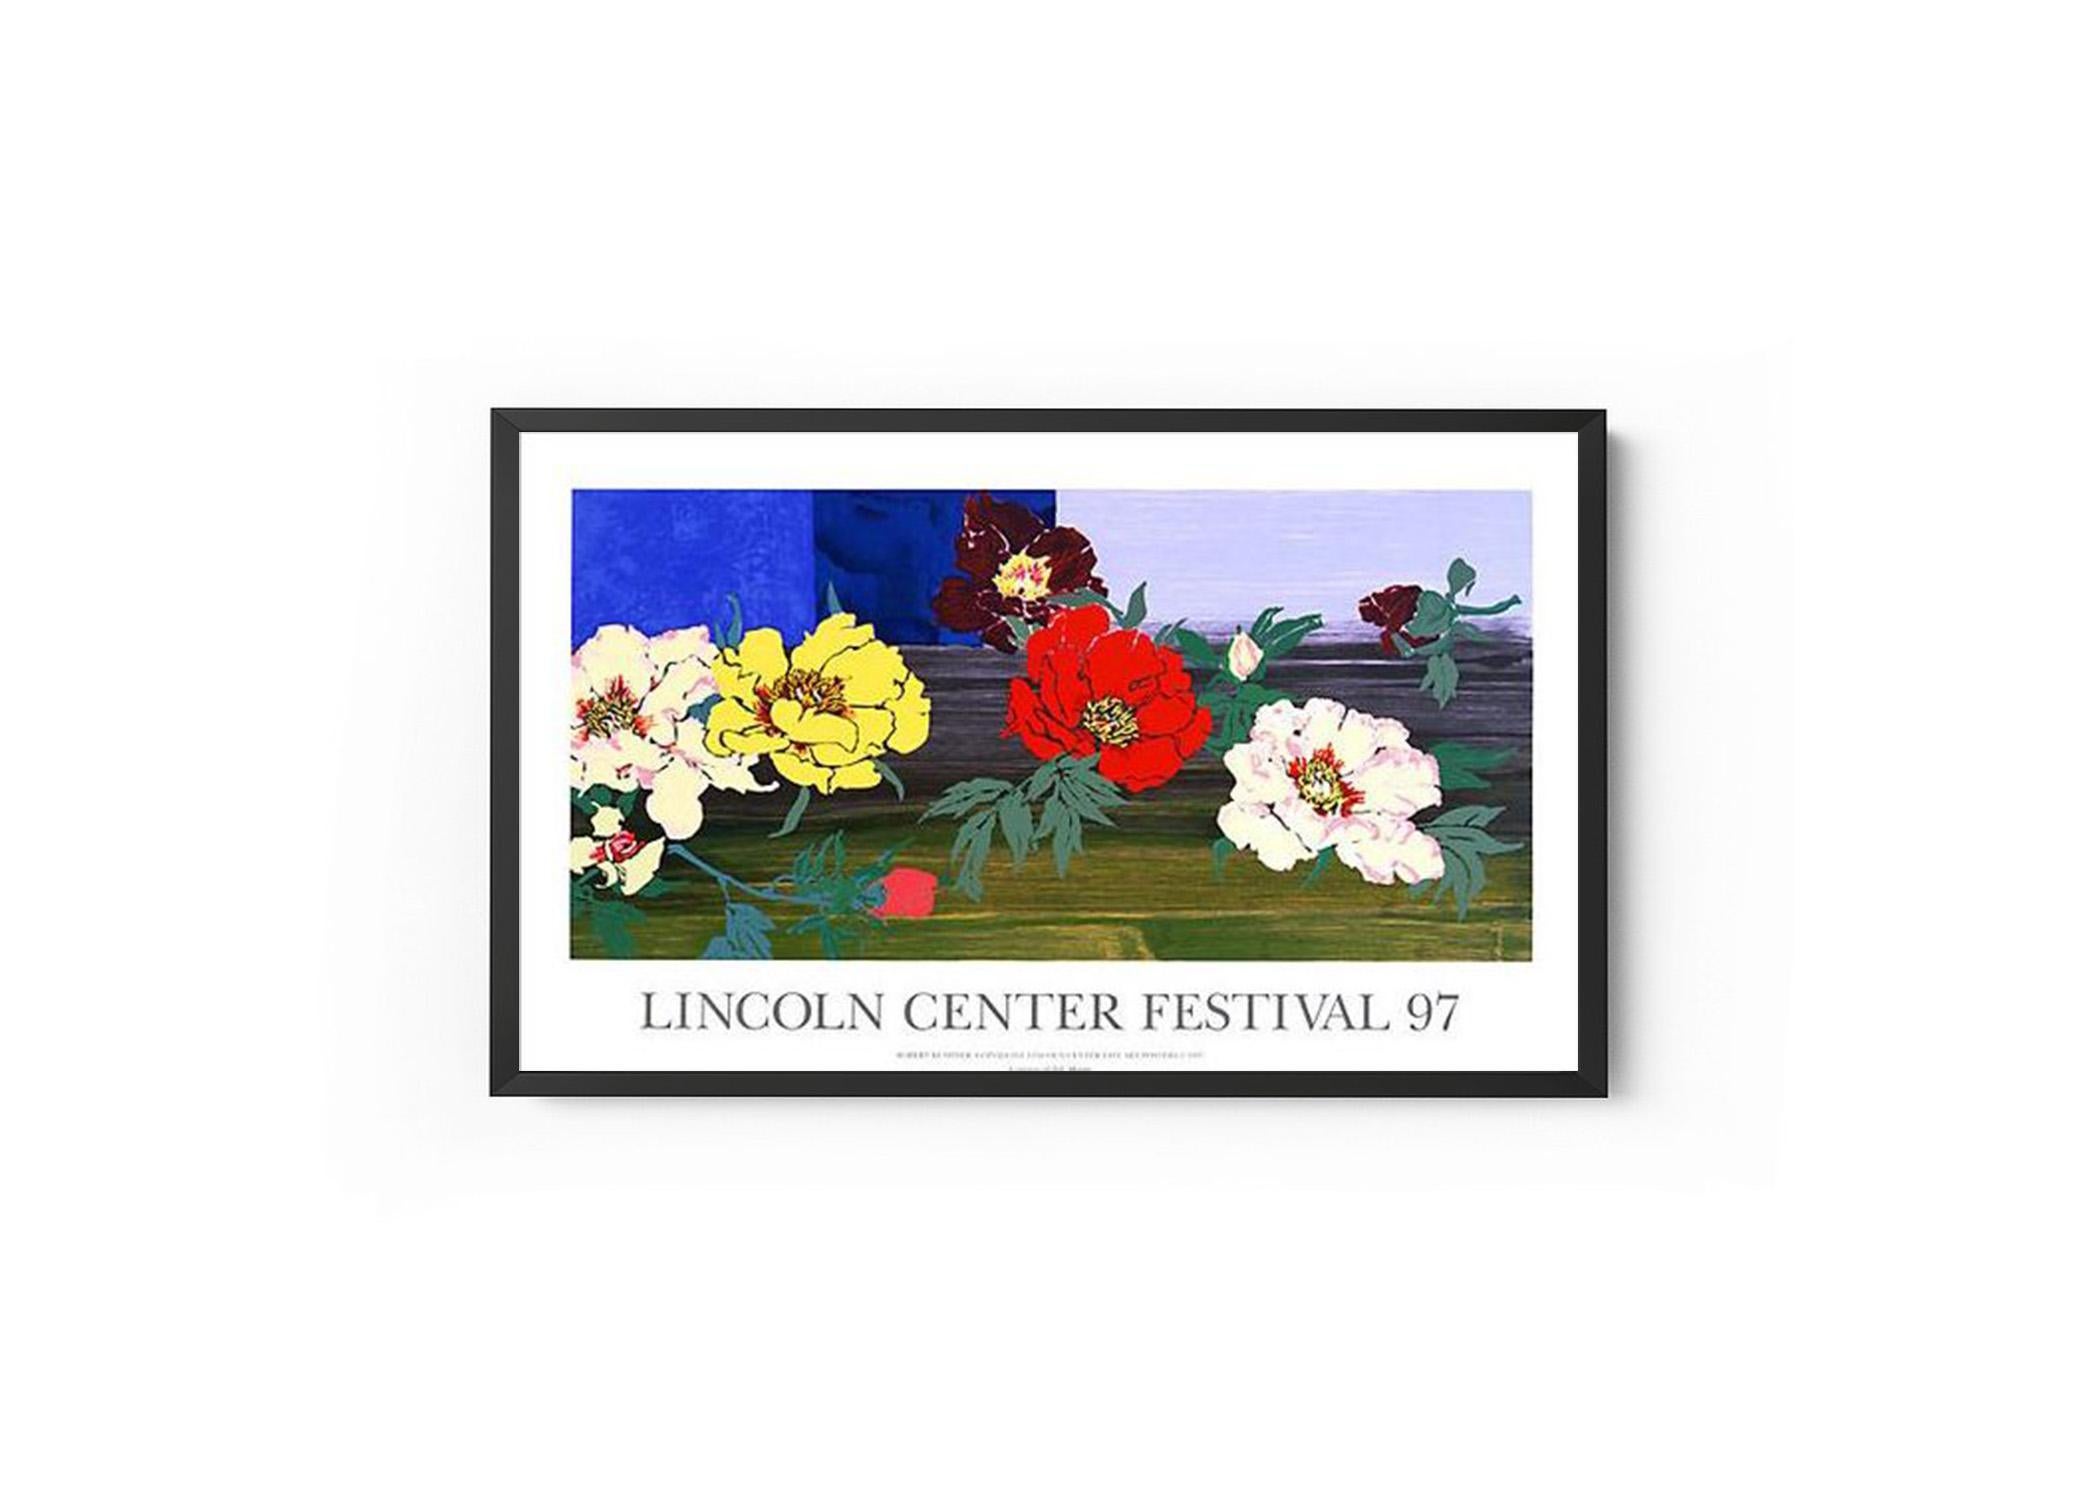 Linwood Lincoln Center Festival 97 Poster - Print by Robert Kushner